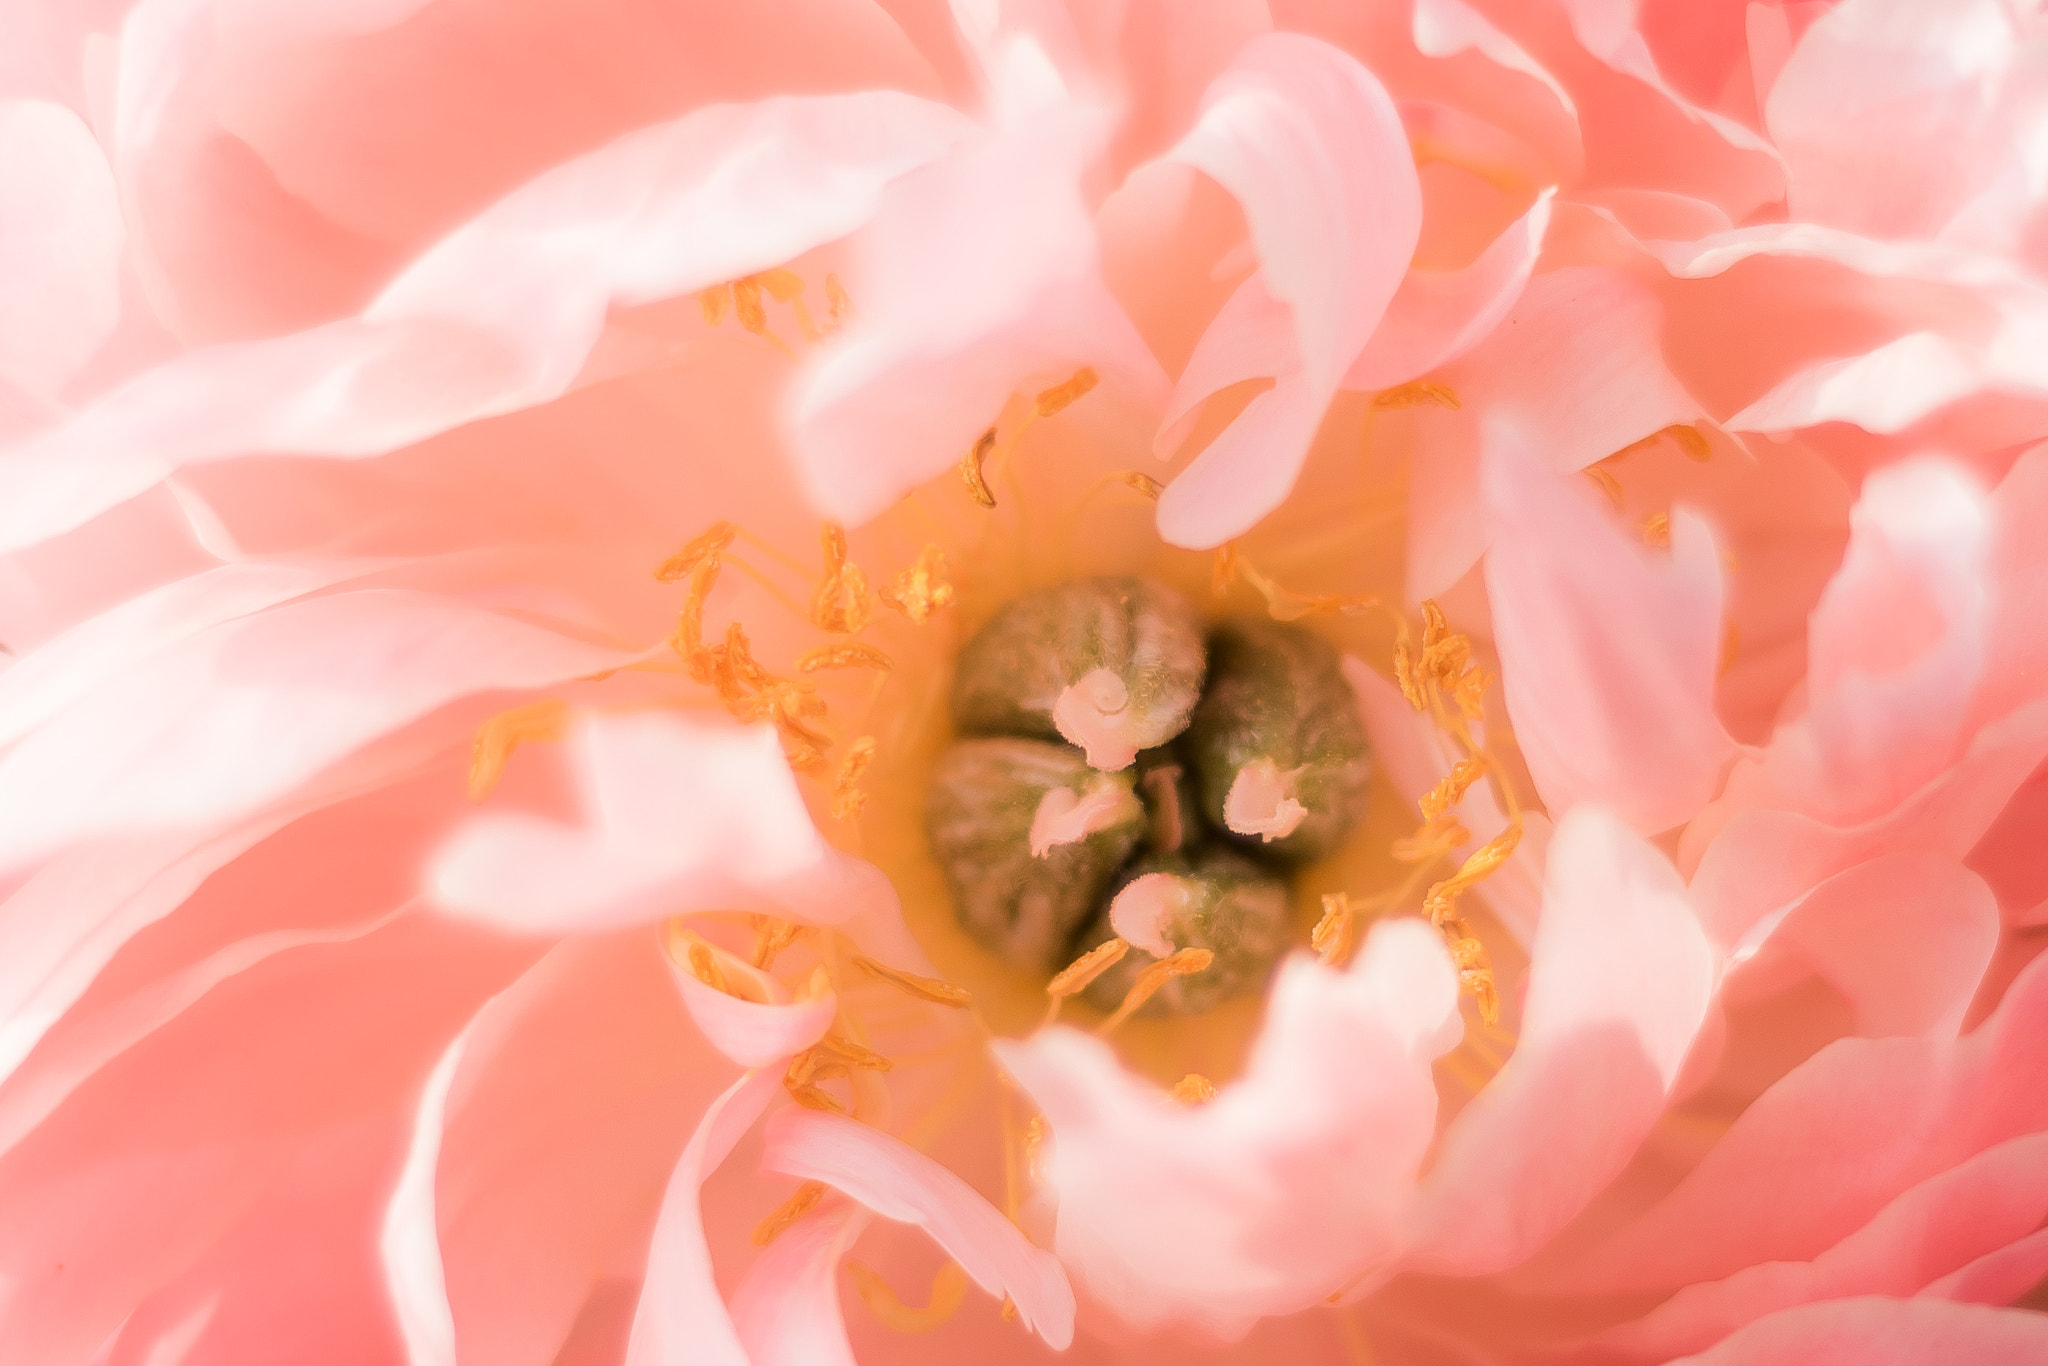 Nikon D750 sample photo. A flower's heart photography